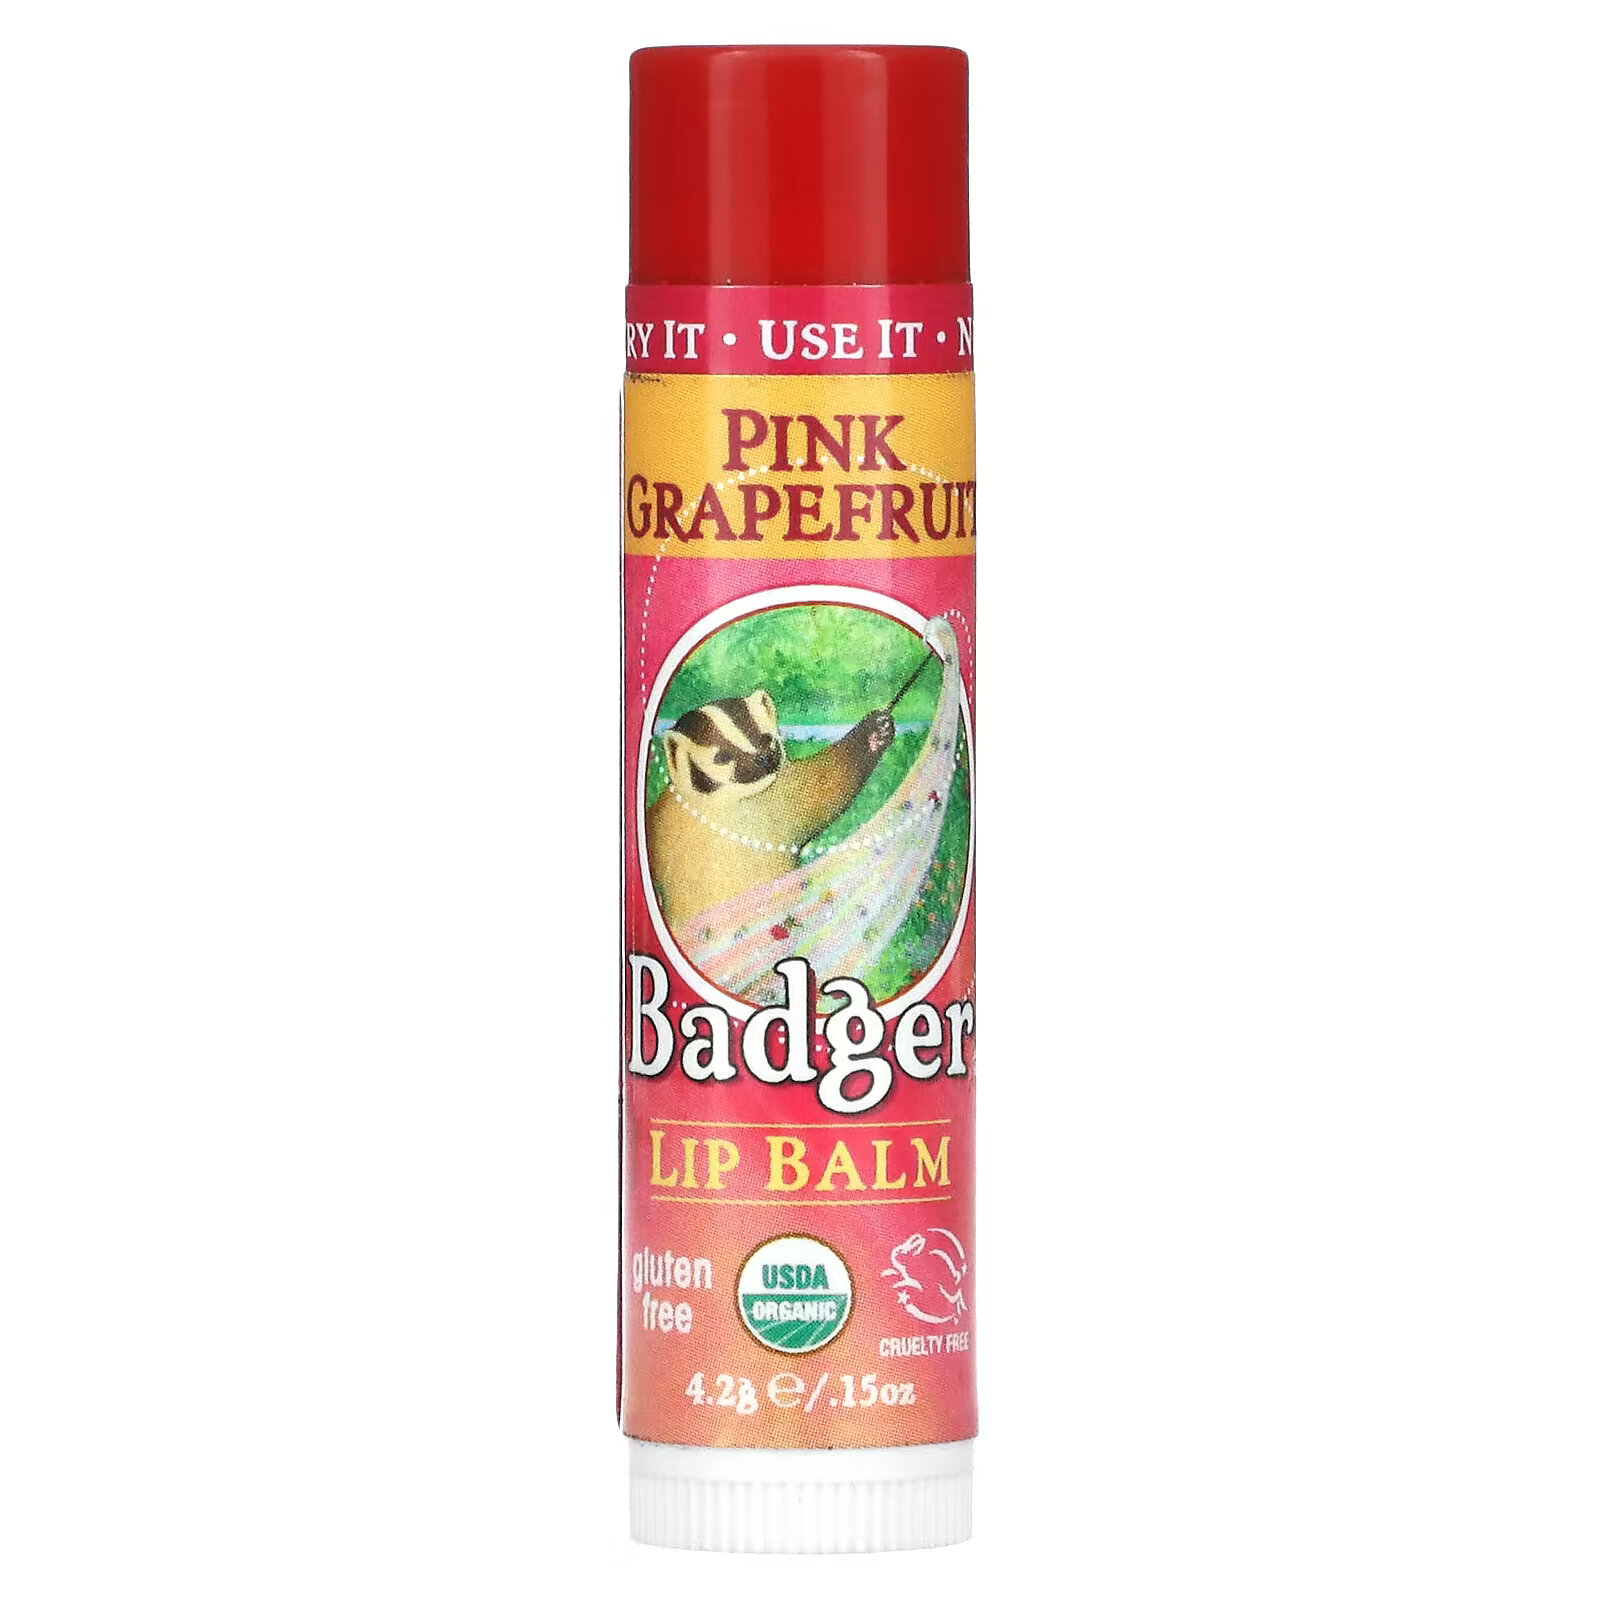 Badger Company, Органический бальзам для губ, розовый грейпфрут, 4,2 г badger company органический бальзам для губ без запаха 4 2 г 0 15 унции